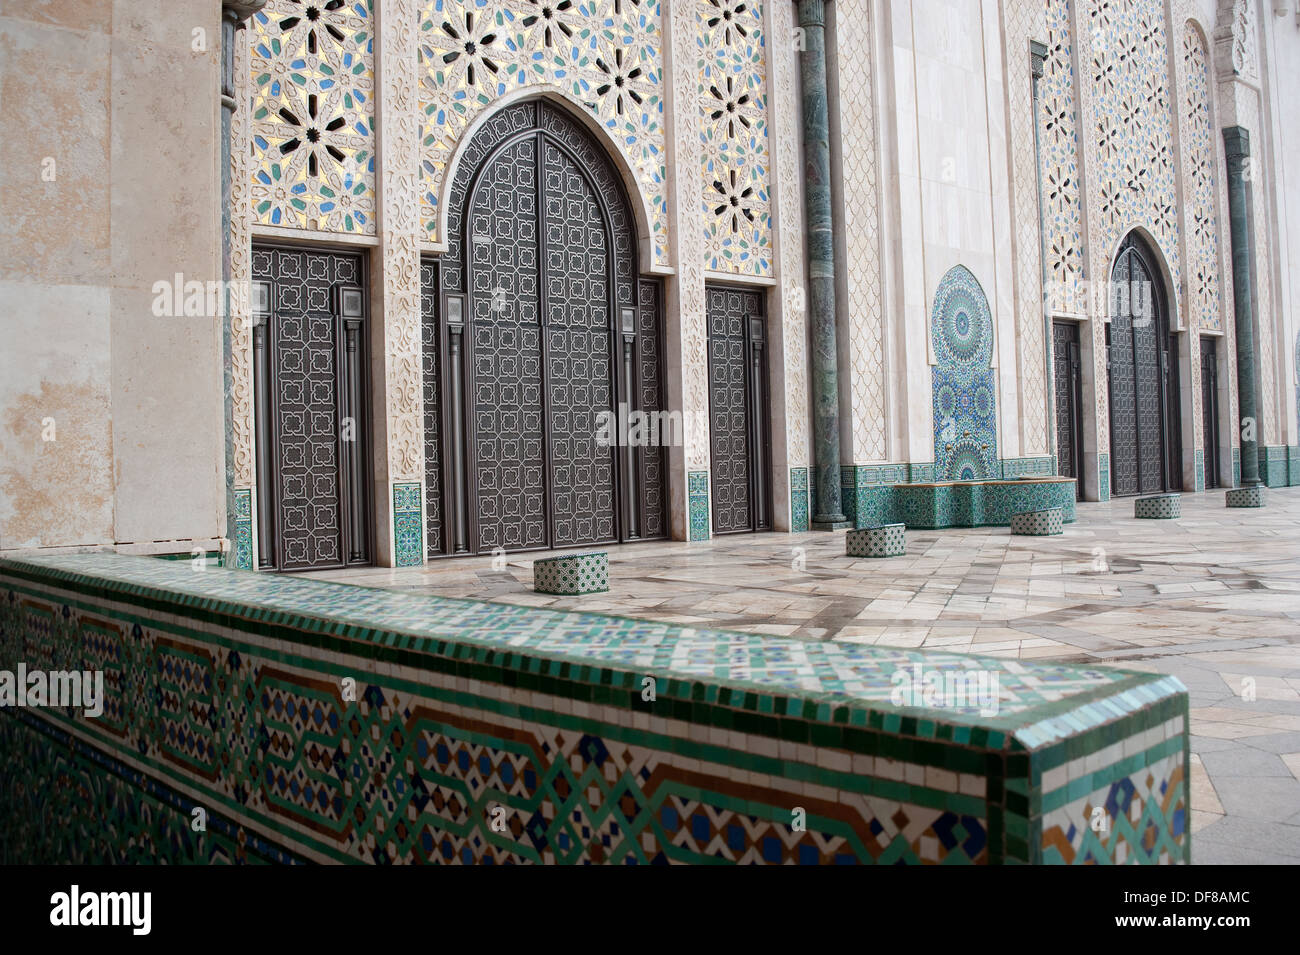 Hassan II mosque ( Morocco) Stock Photo